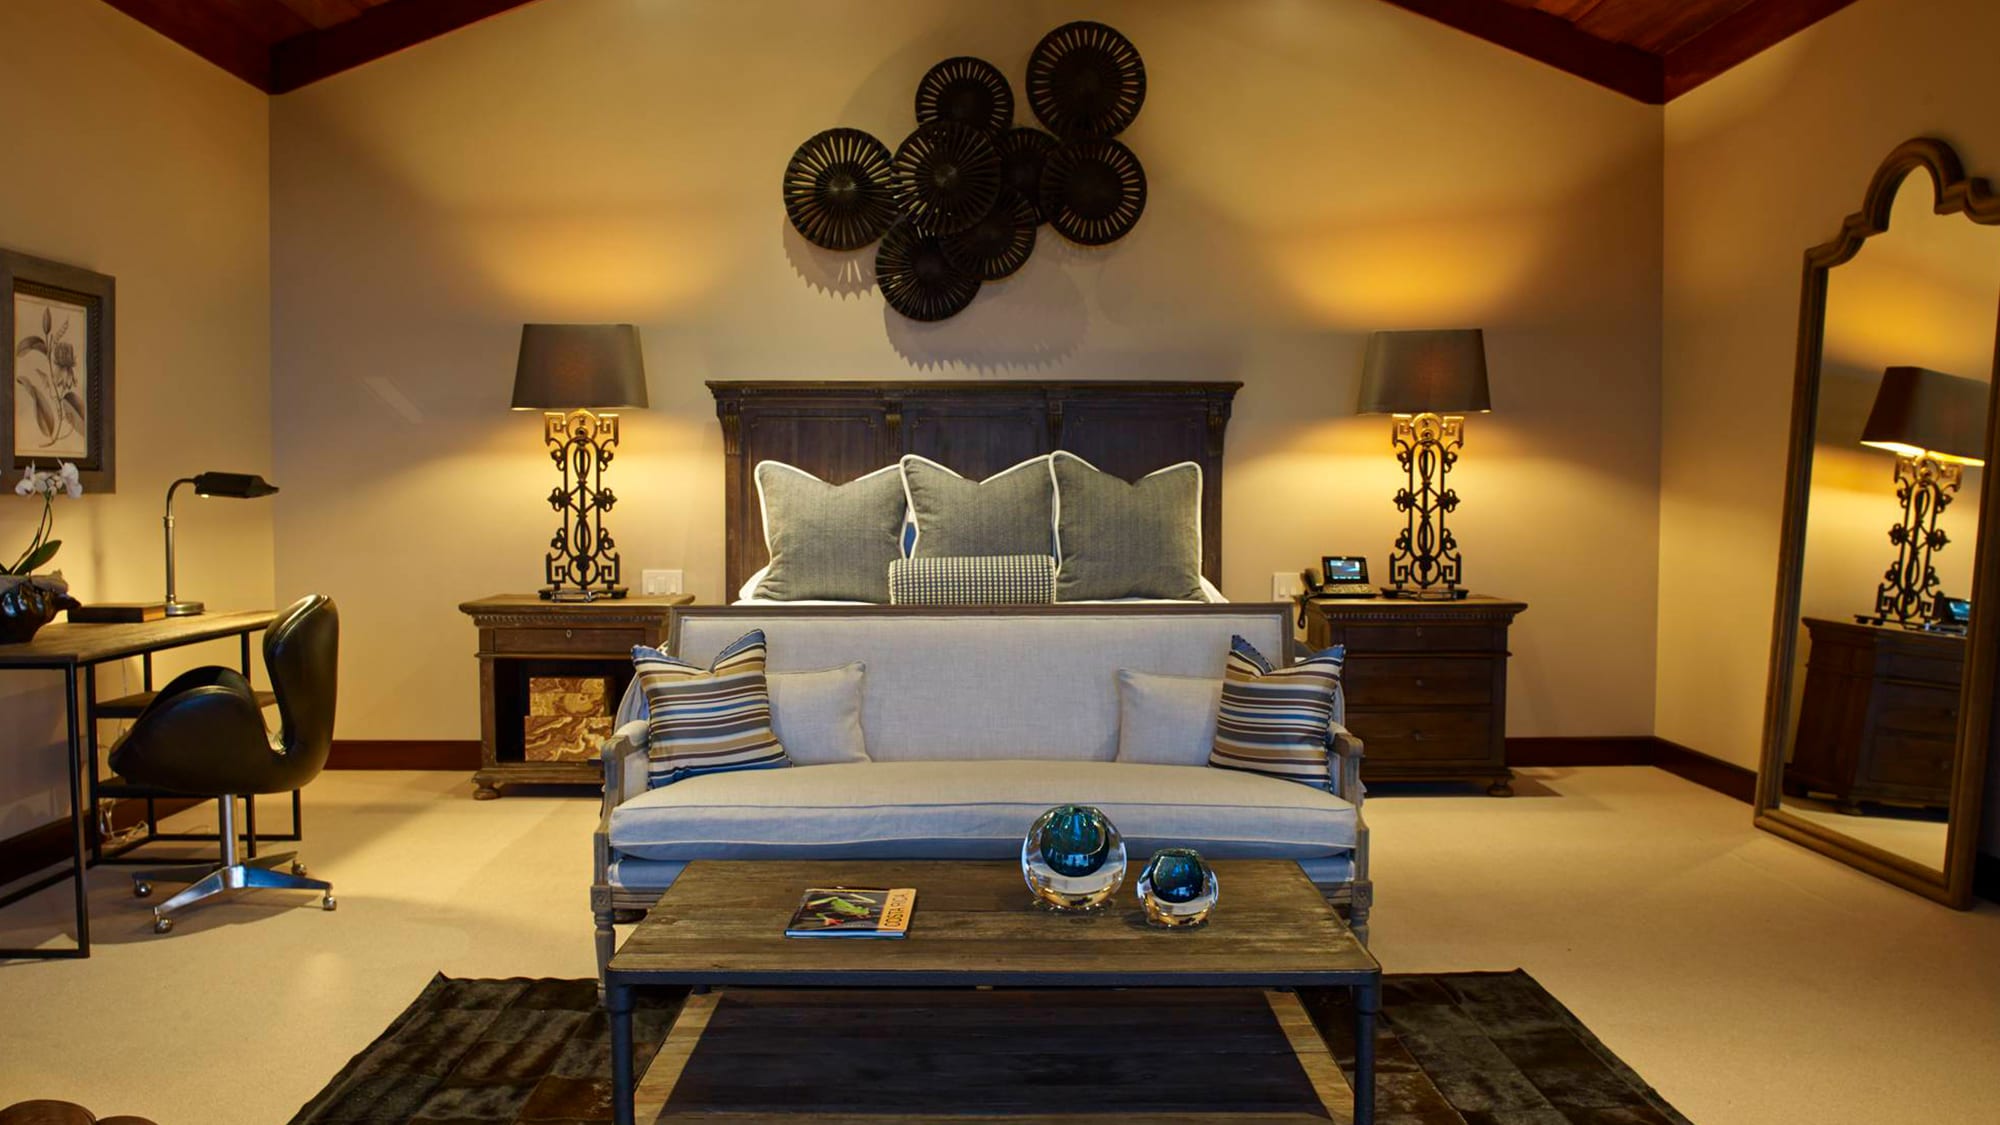 Rooms & Suites Gallery - Hacienda AltaGracia Resort in Costa Rica